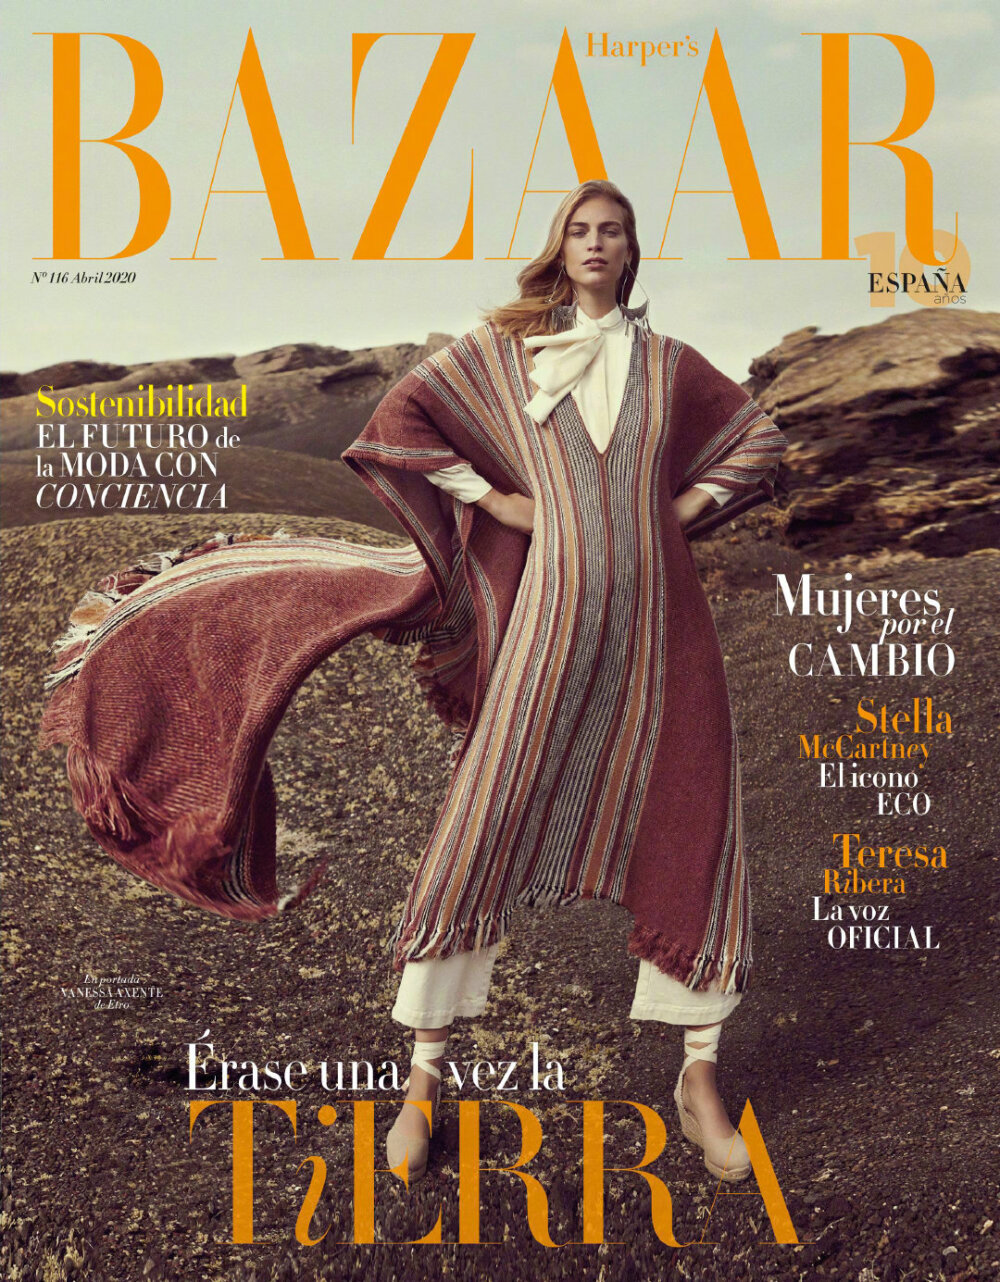 harper"s bazaar spain april 2020 西班牙版时尚芭莎四月刊模特